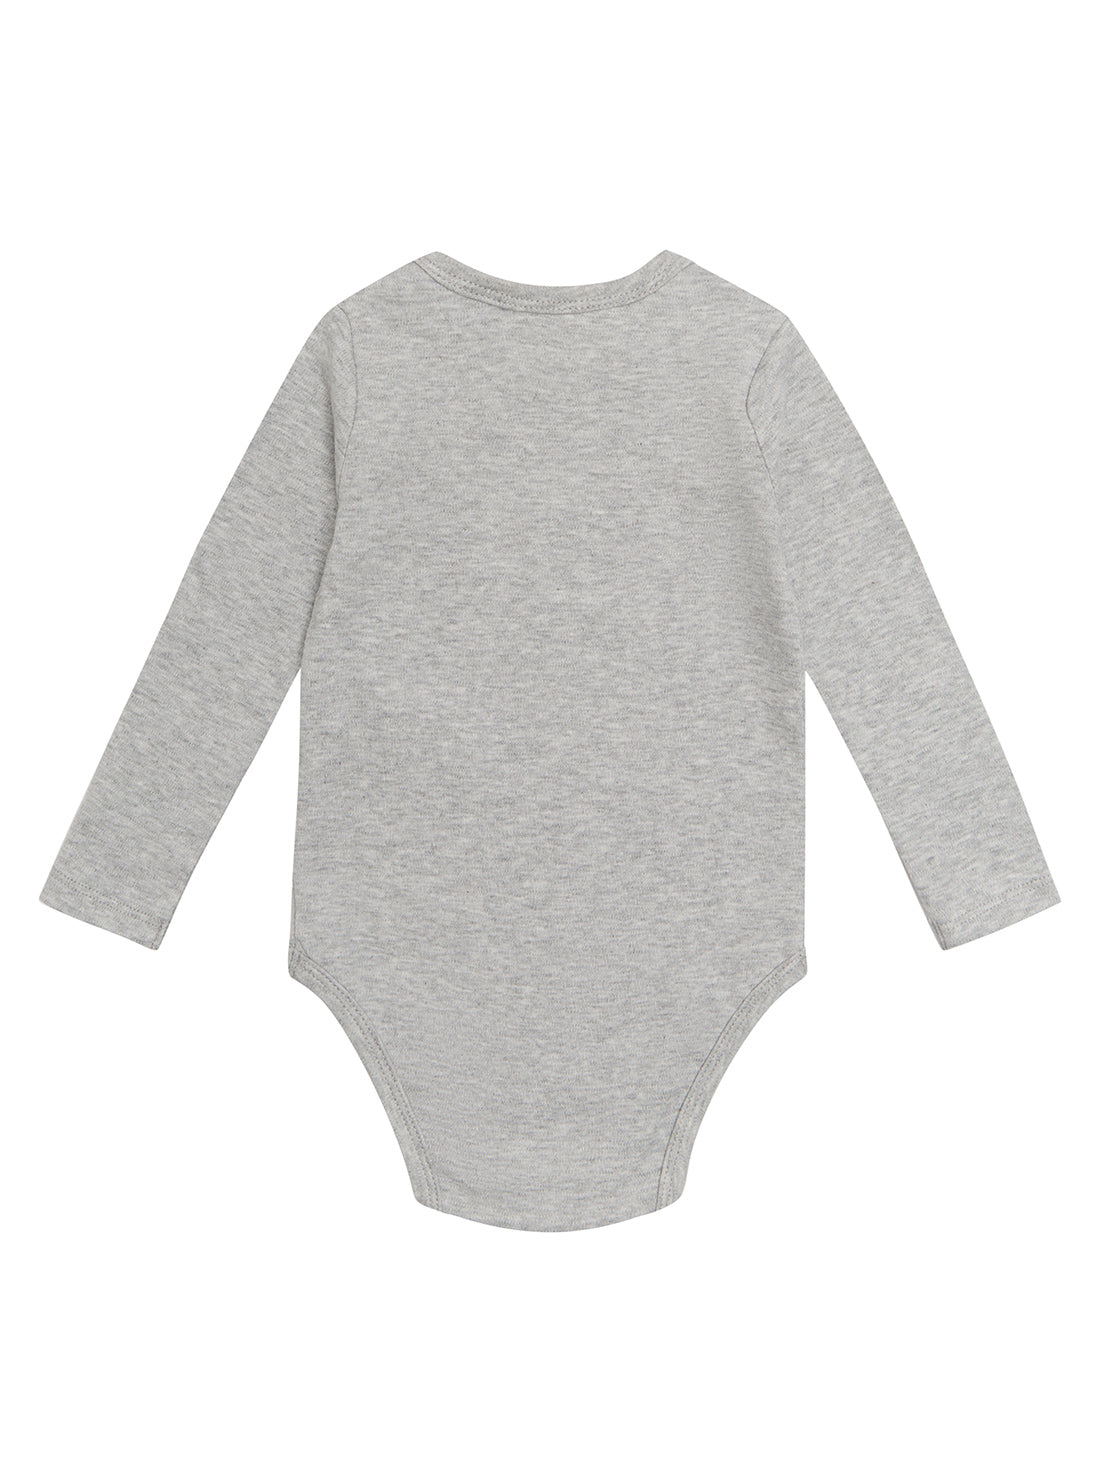 GUESS Baby Boy Grey Logo Bodysuit Top (0-12m) H2YW09K8ML0 Back View